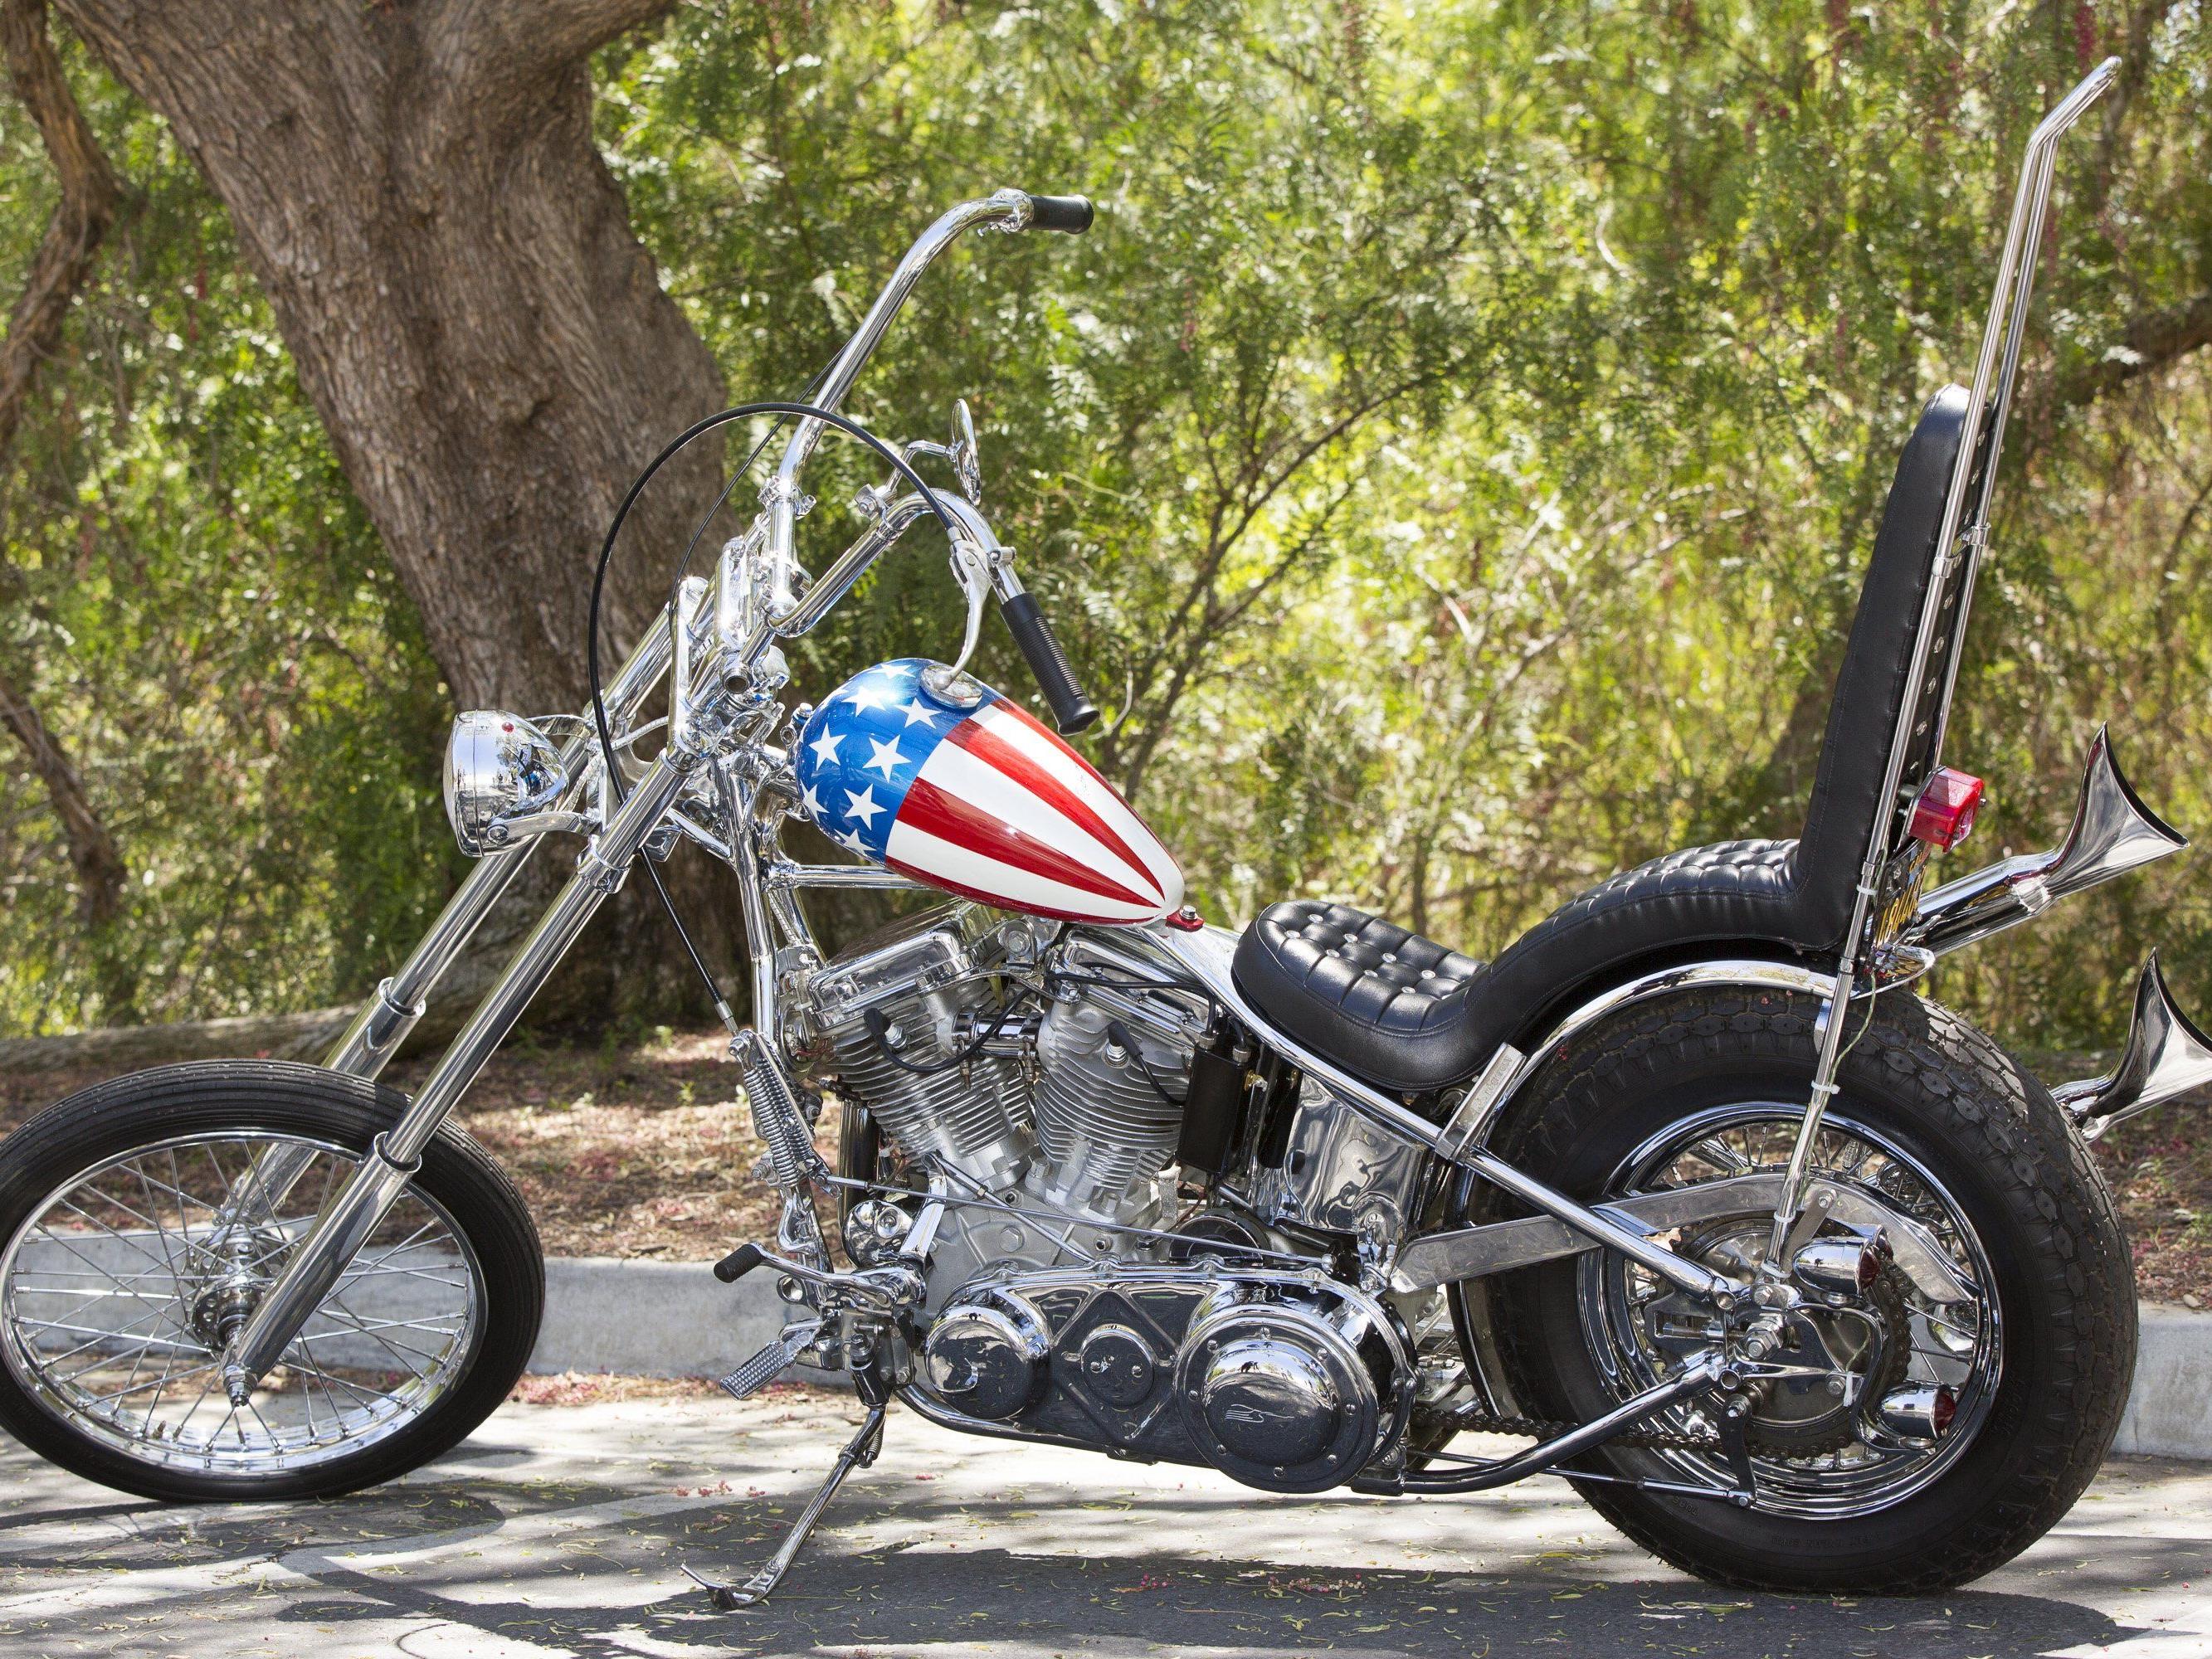 1,35 Mio. Dollar für die Harley Davidson.